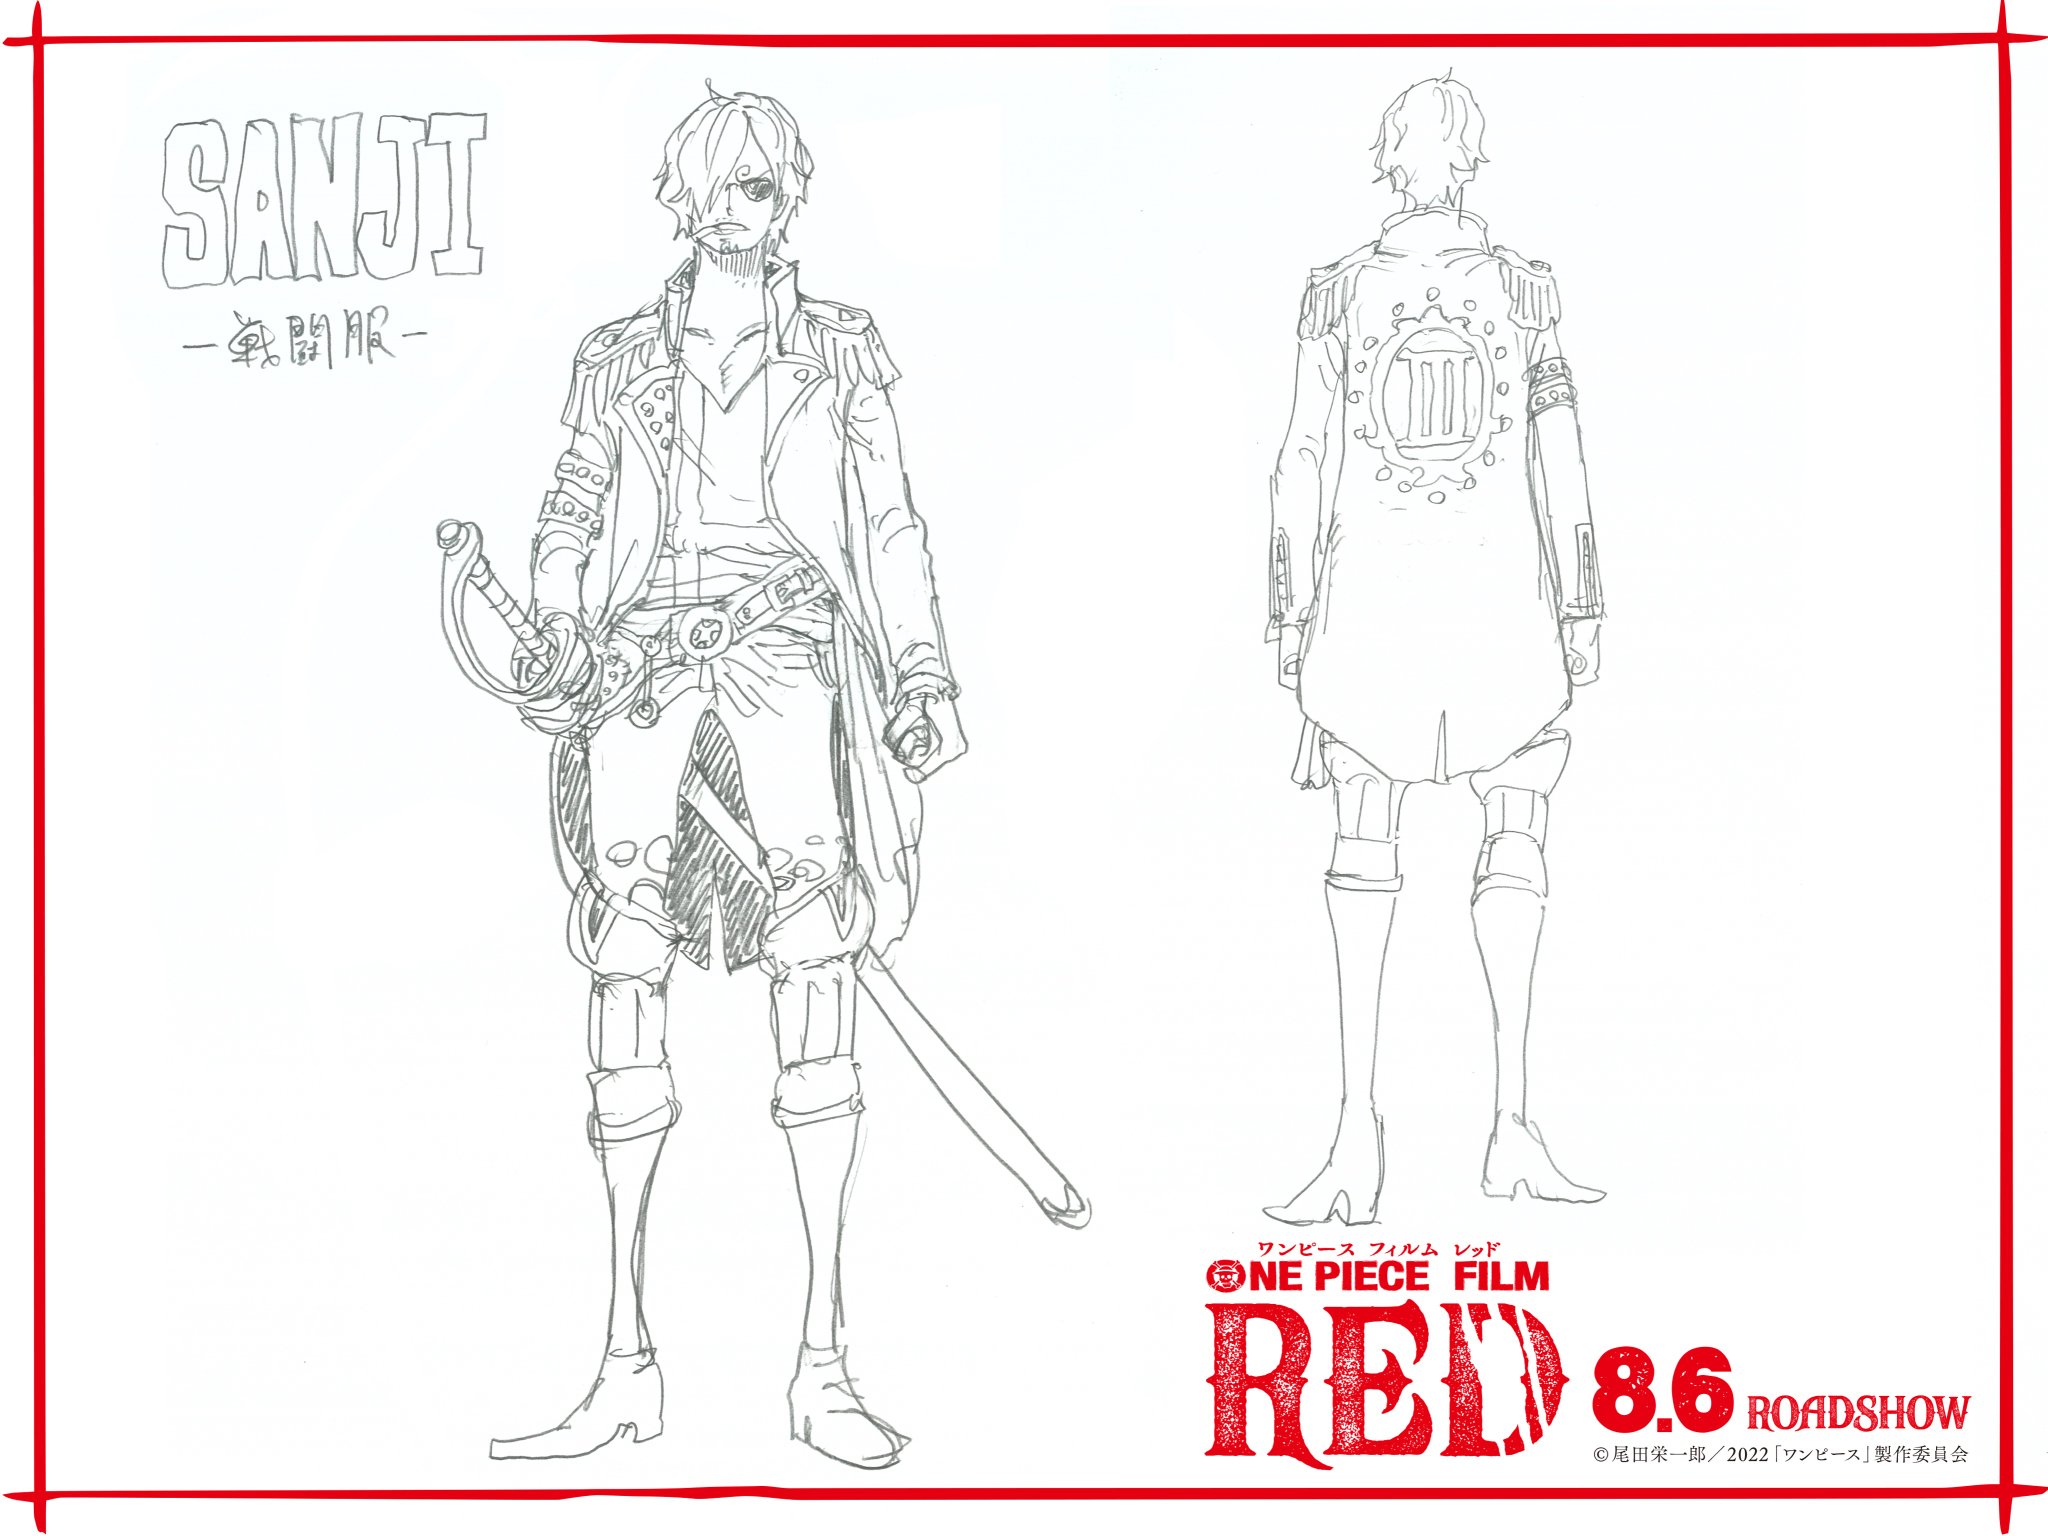 One piece filme red: "uniforme de combate" de sanji.